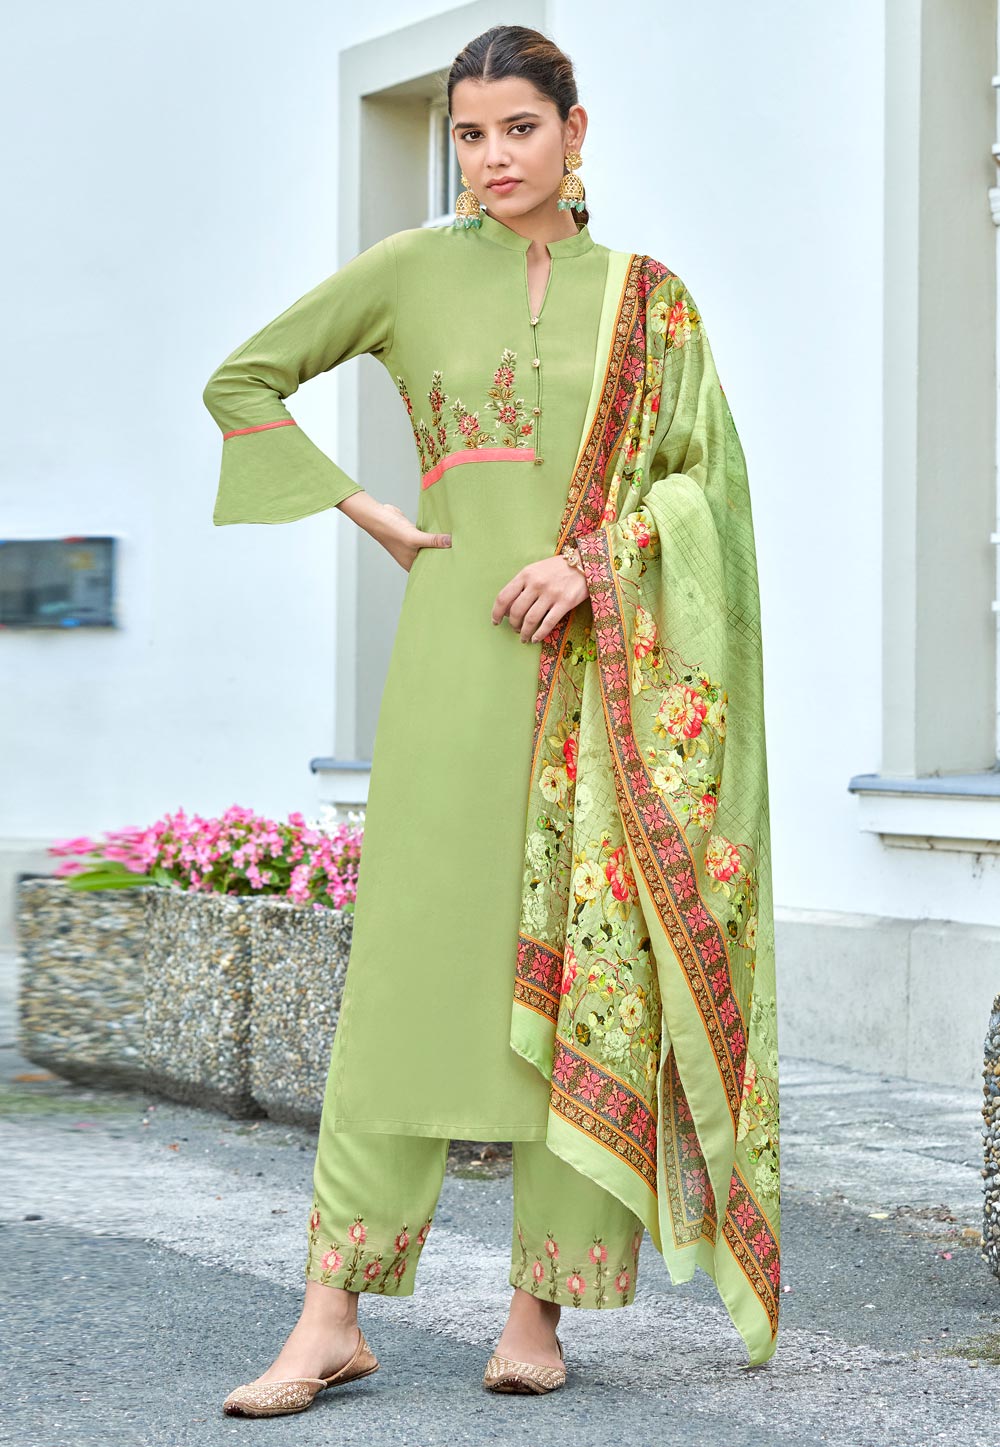 Collar Neck Designs for Salwar Kameez | Collar Back Neck Patterns Online